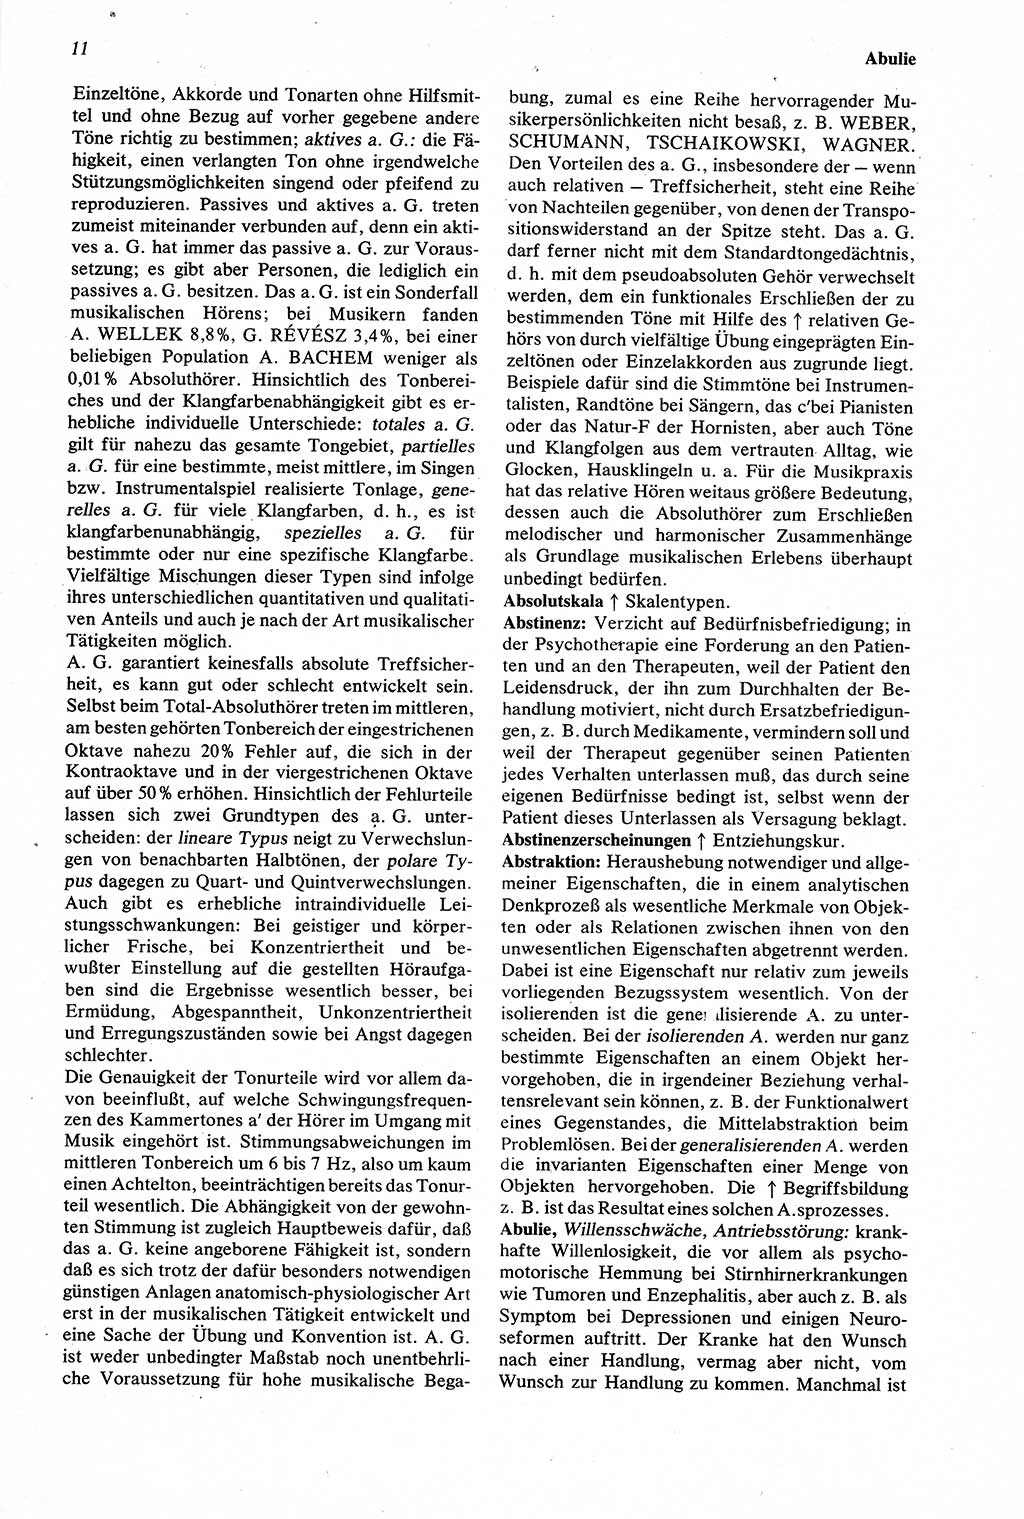 Wörterbuch der Psychologie [Deutsche Demokratische Republik (DDR)] 1976, Seite 11 (Wb. Psych. DDR 1976, S. 11)